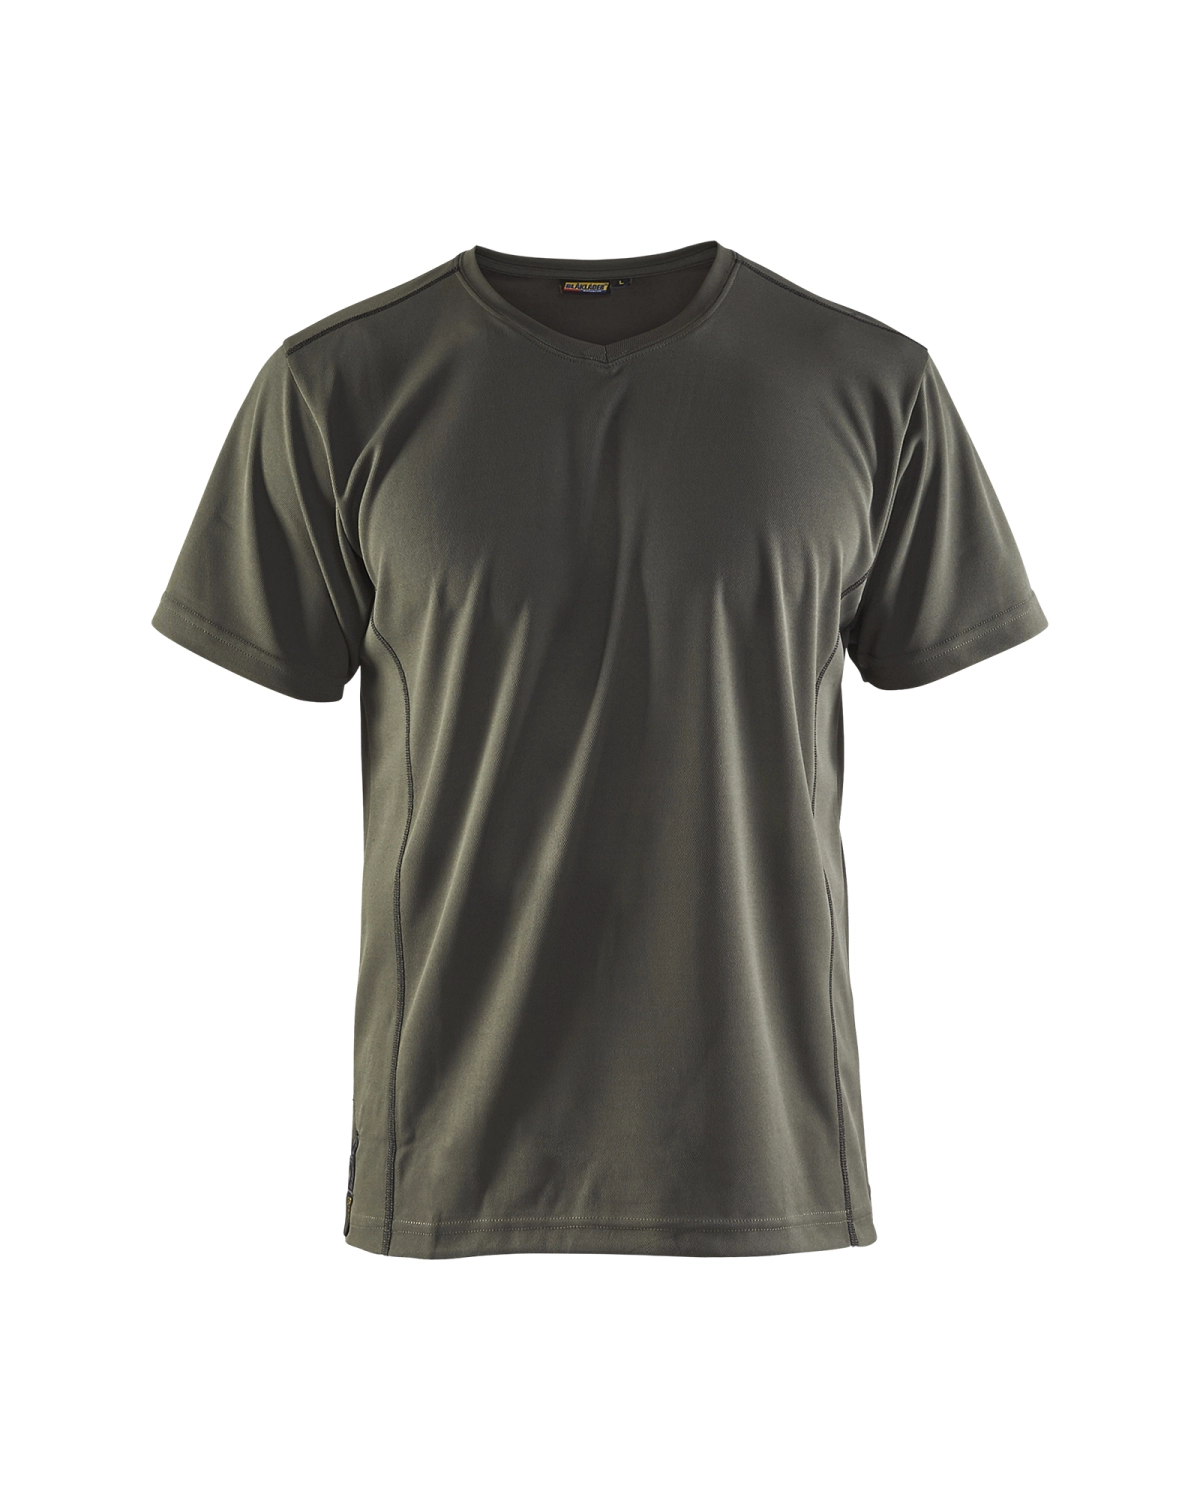 Blåkläder 3323 UV t-shirt - army groen - XXL-image